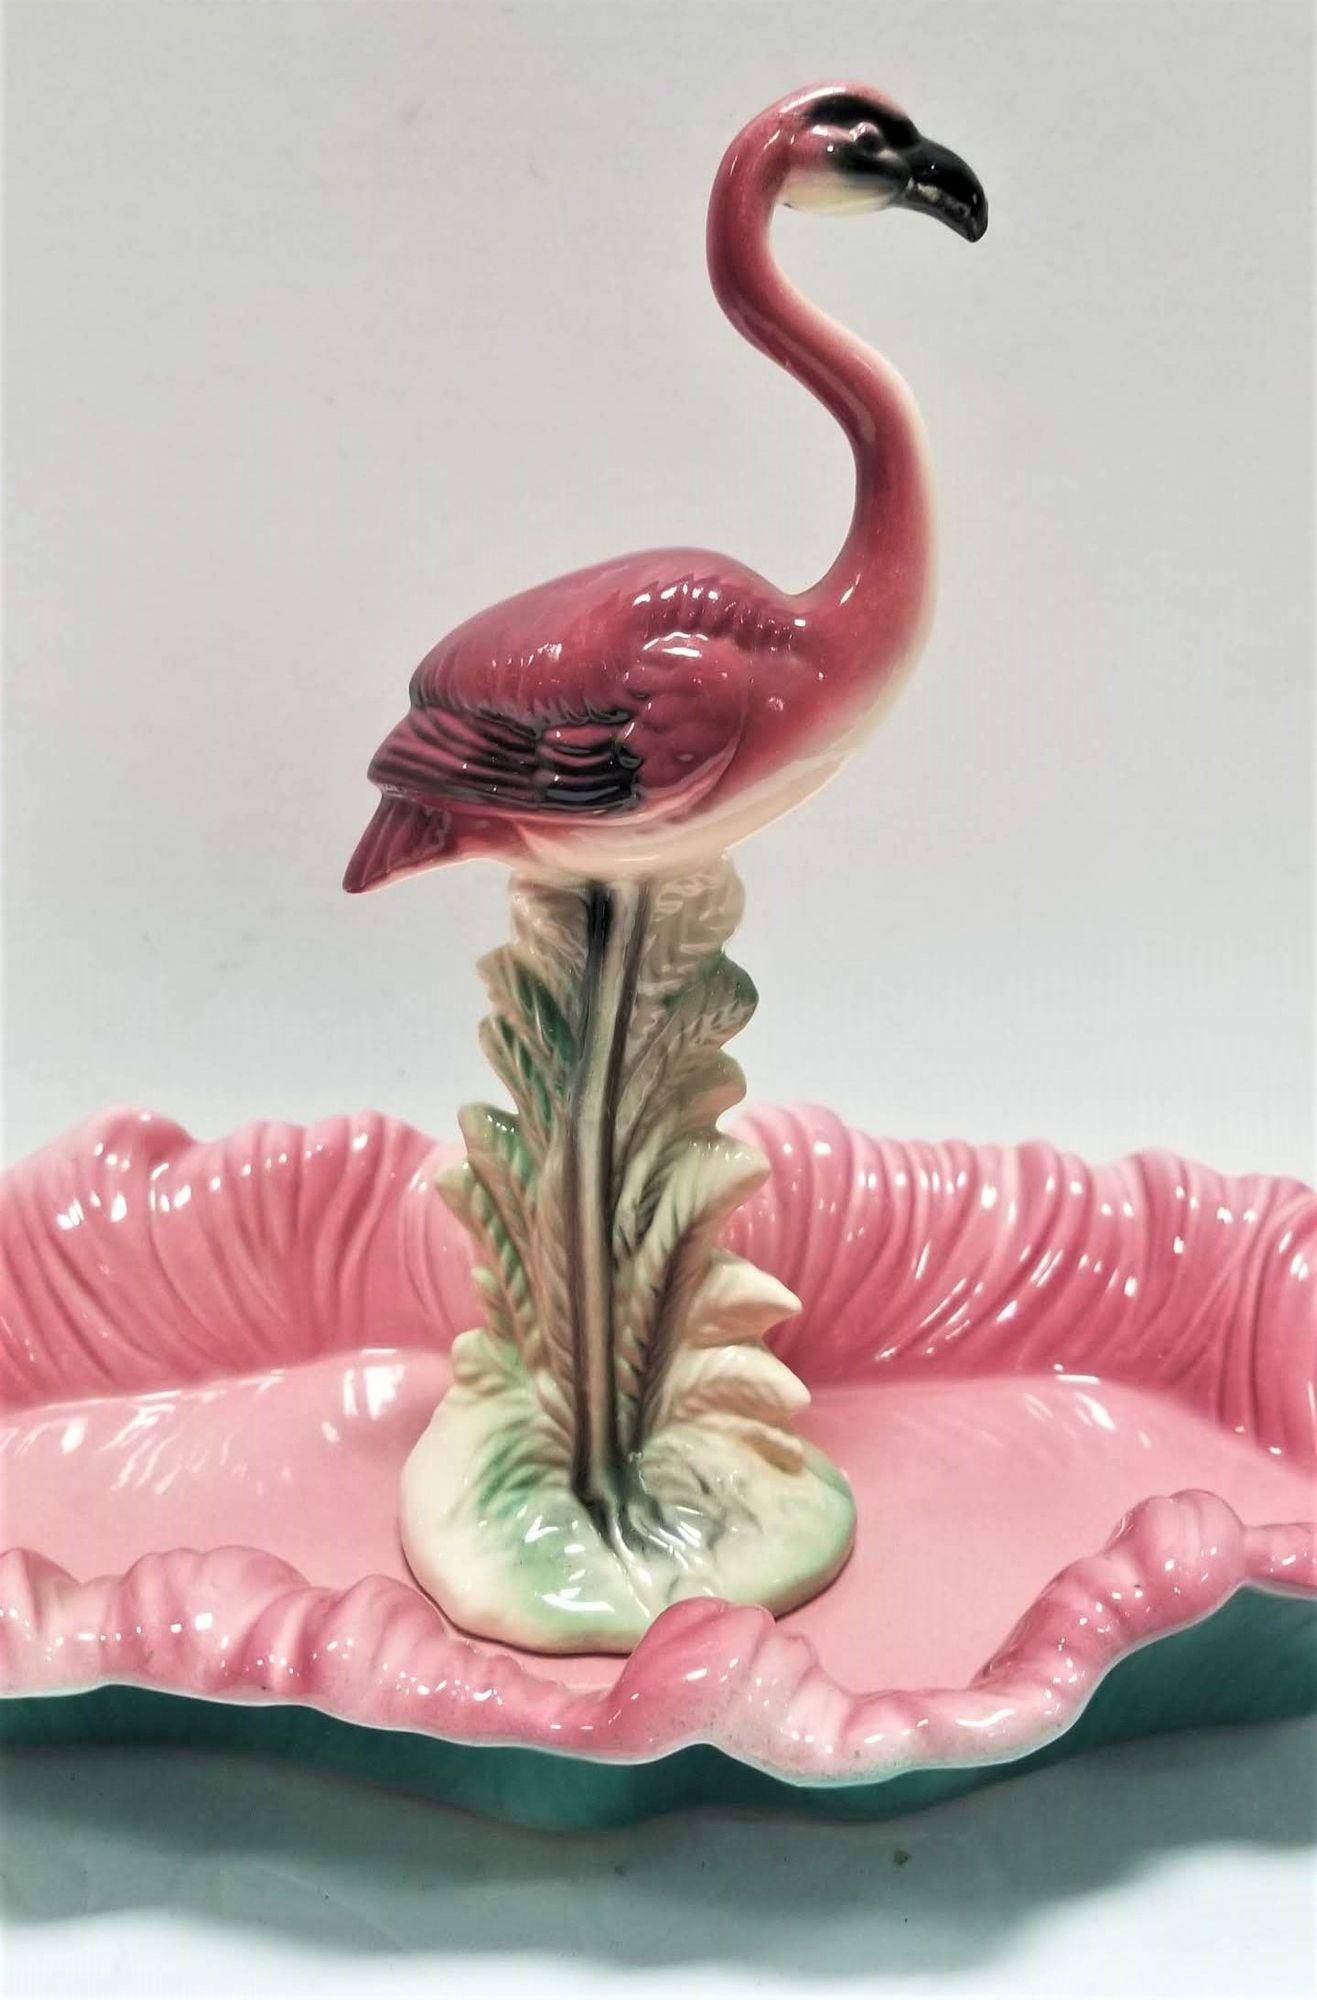 Mid Century rosa und grün Flamingo Keramik-Figur in Flamingo-Pool-Tablett.
Maddux of California war ein Keramikunternehmen, das von den 1930er bis in die 1970er Jahre in Kalifornien tätig war. Sie stellten eine breite Palette von Keramikartikeln